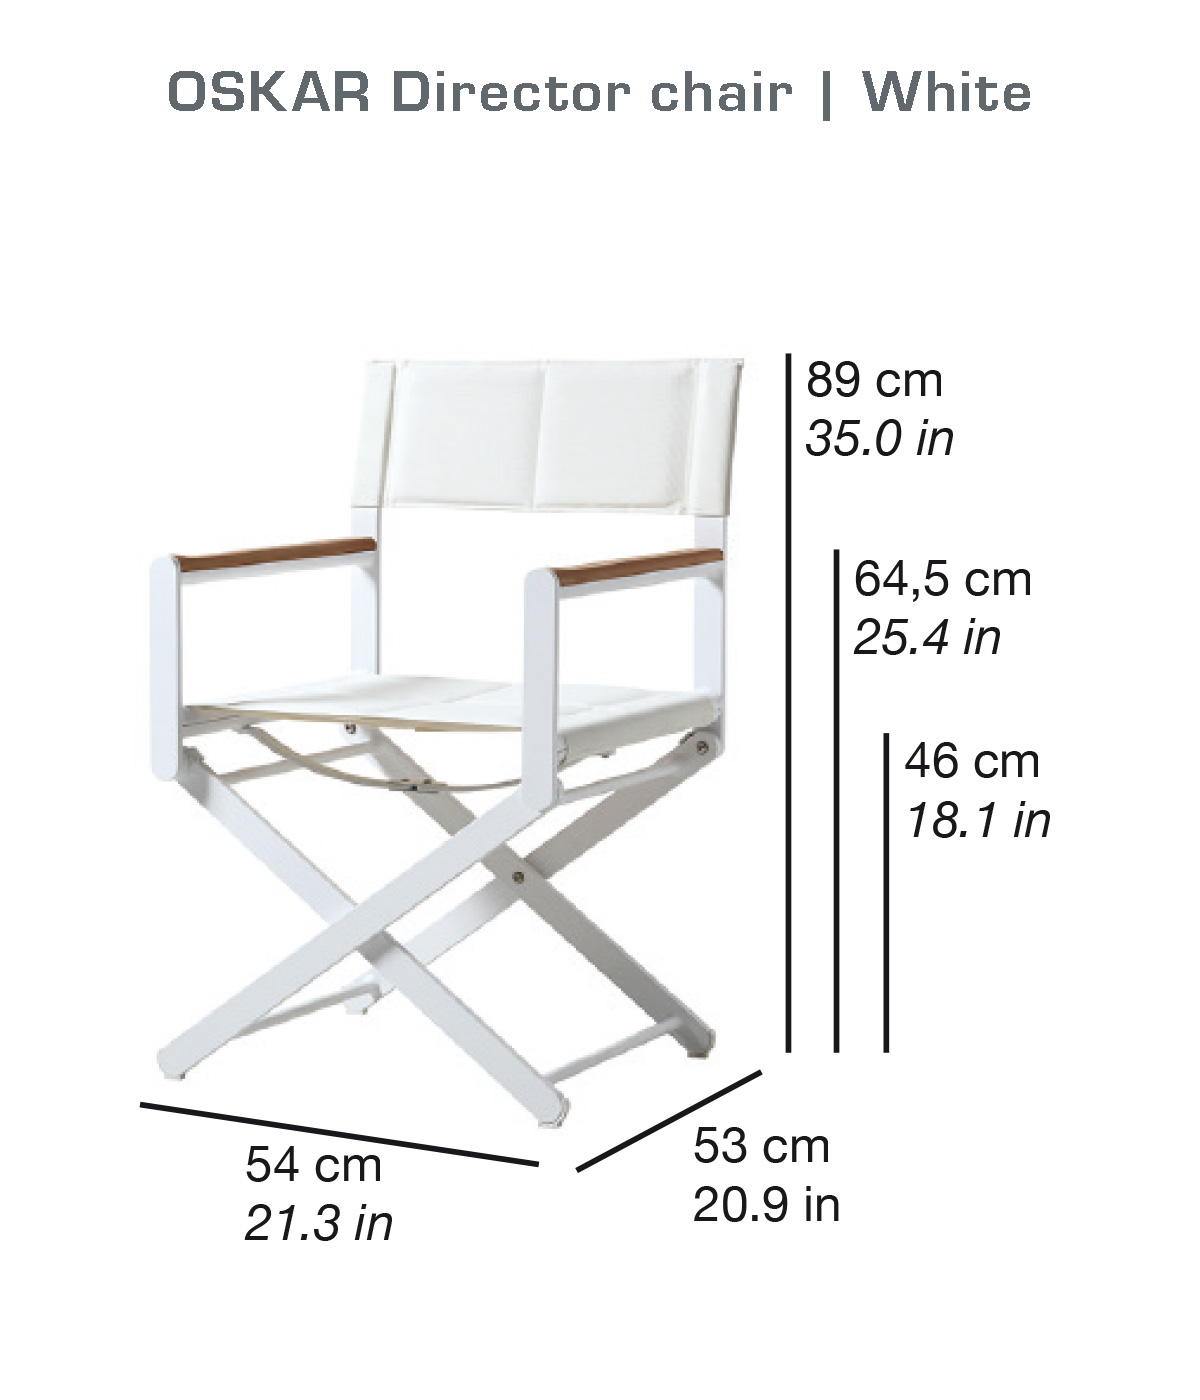 OSKAR Director chair | White